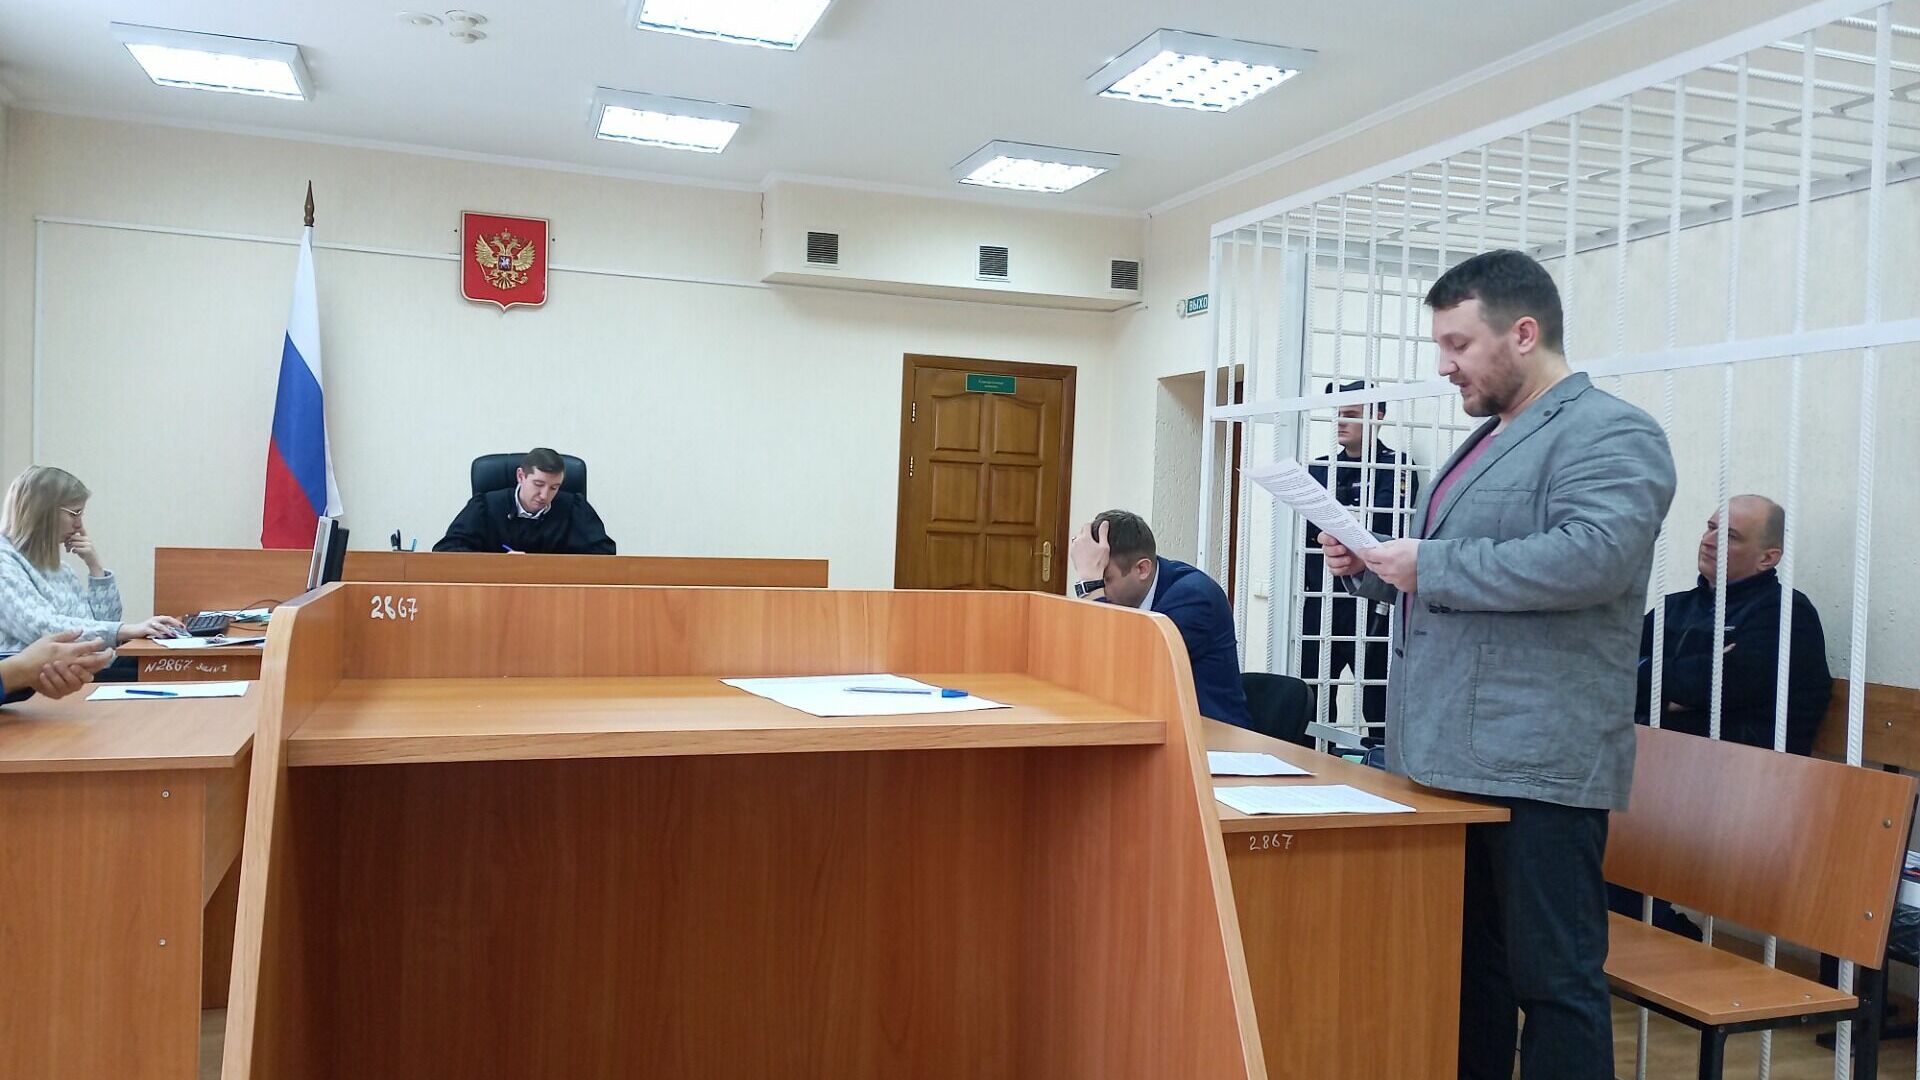 Адвокат Станислав Абрамов выступил в прениях сторон